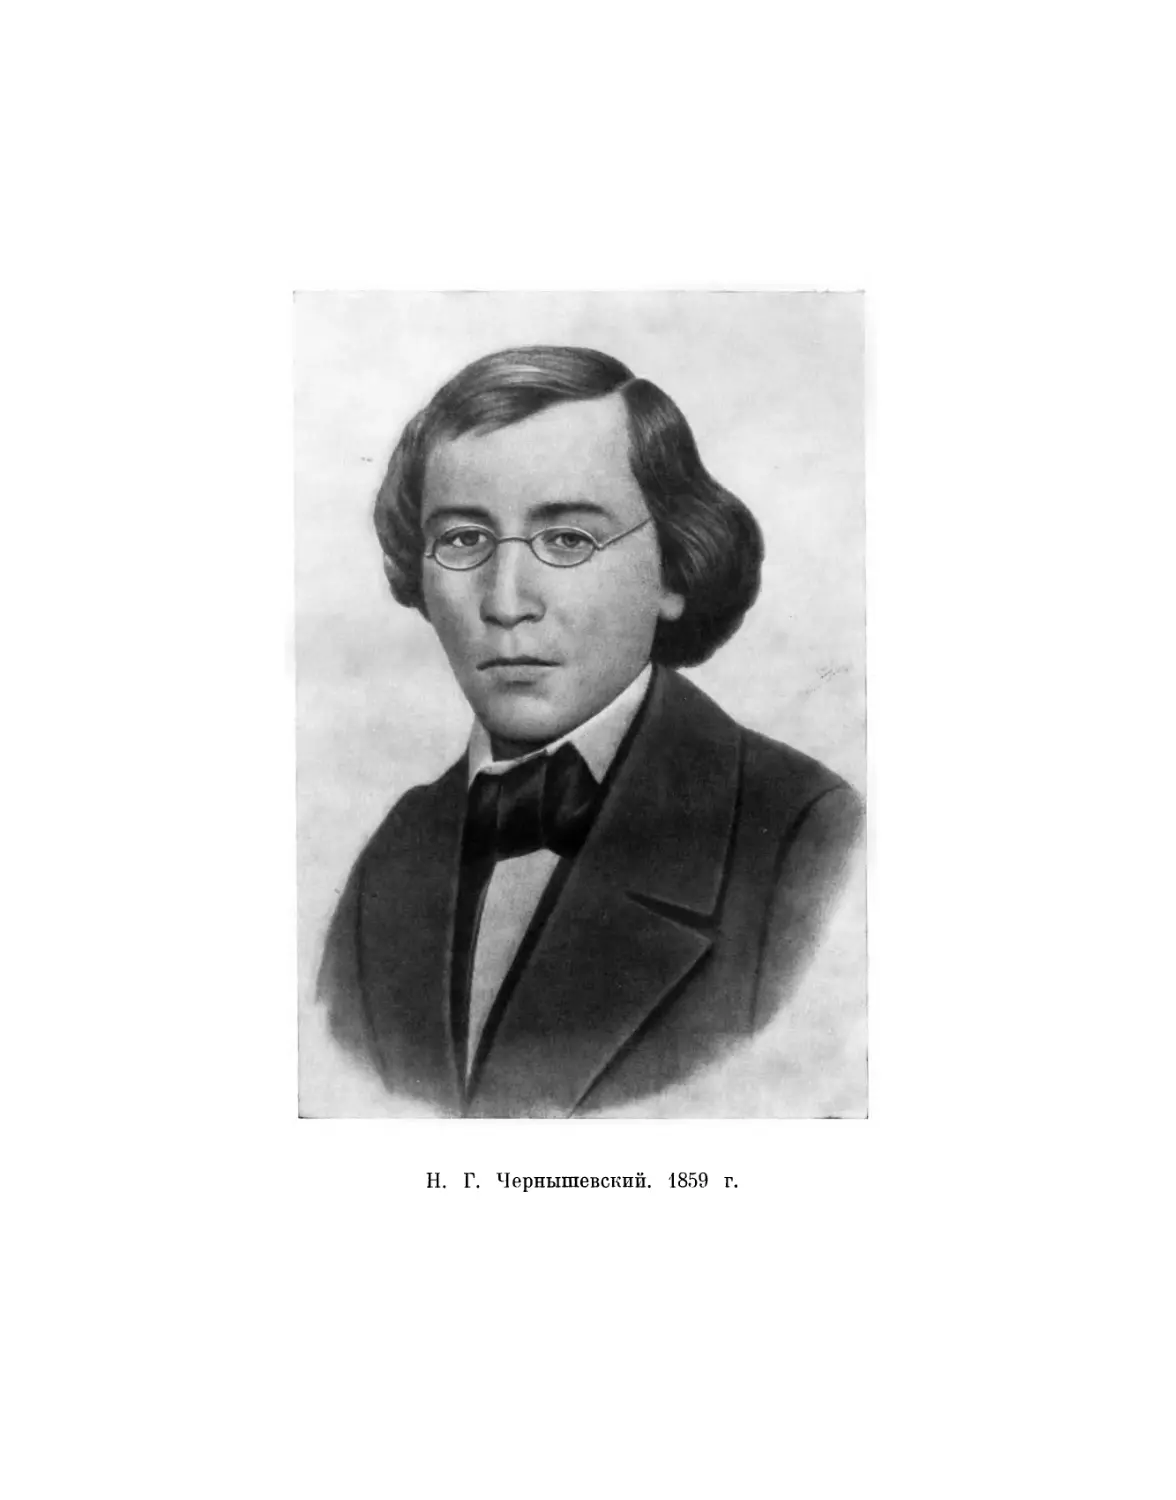 Вклейка. H. Г. Чернышевский. 1859 г.